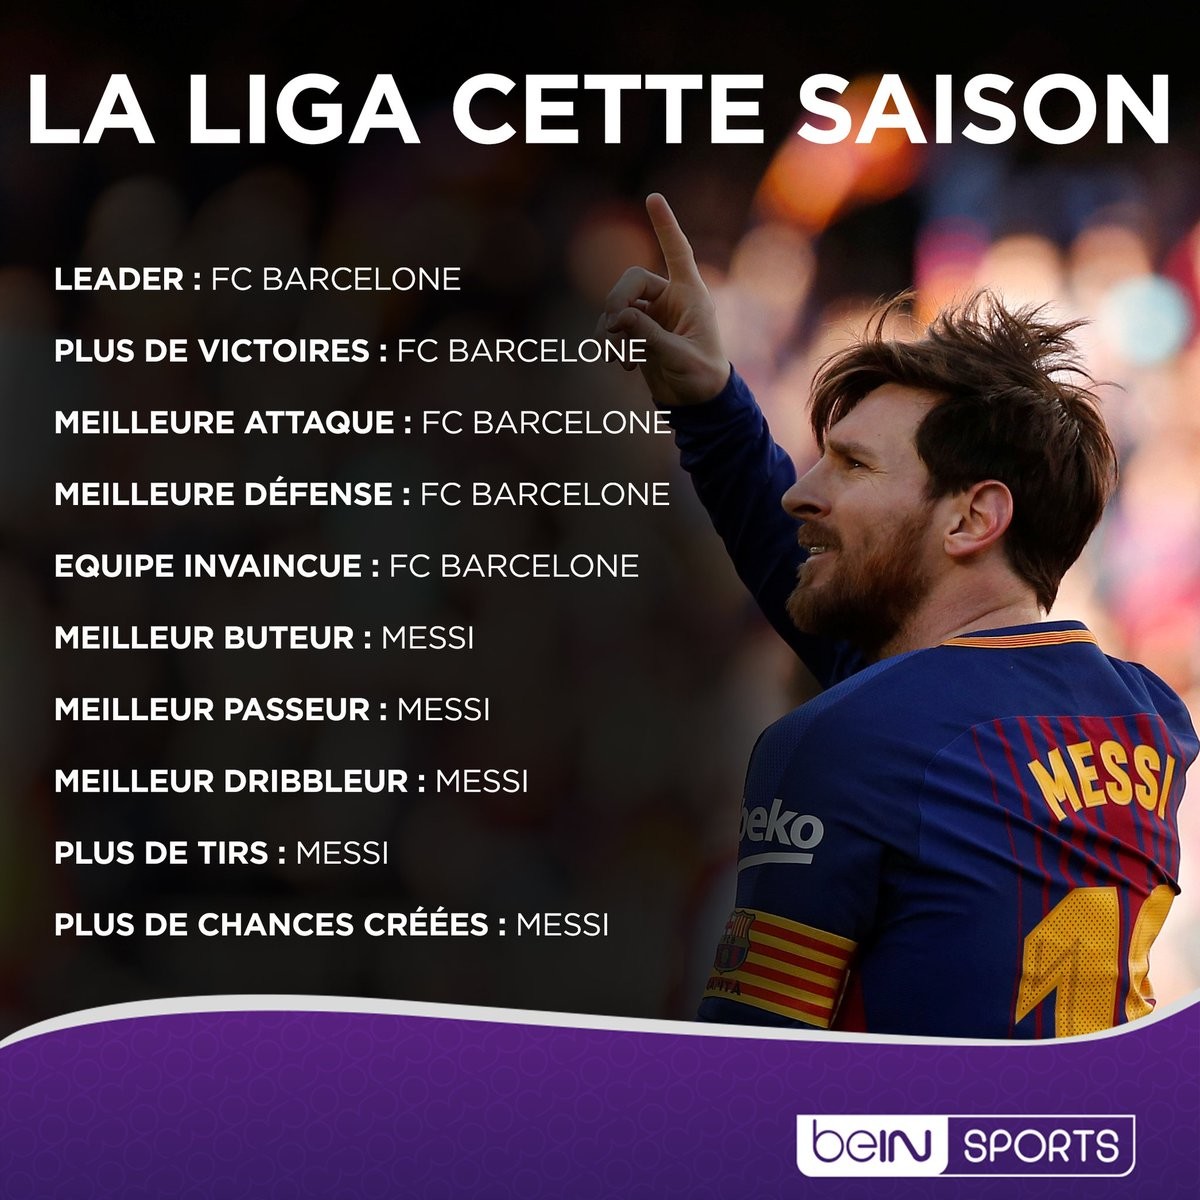 Leo Messi ile ilgili haber, paylaşım ve sözler